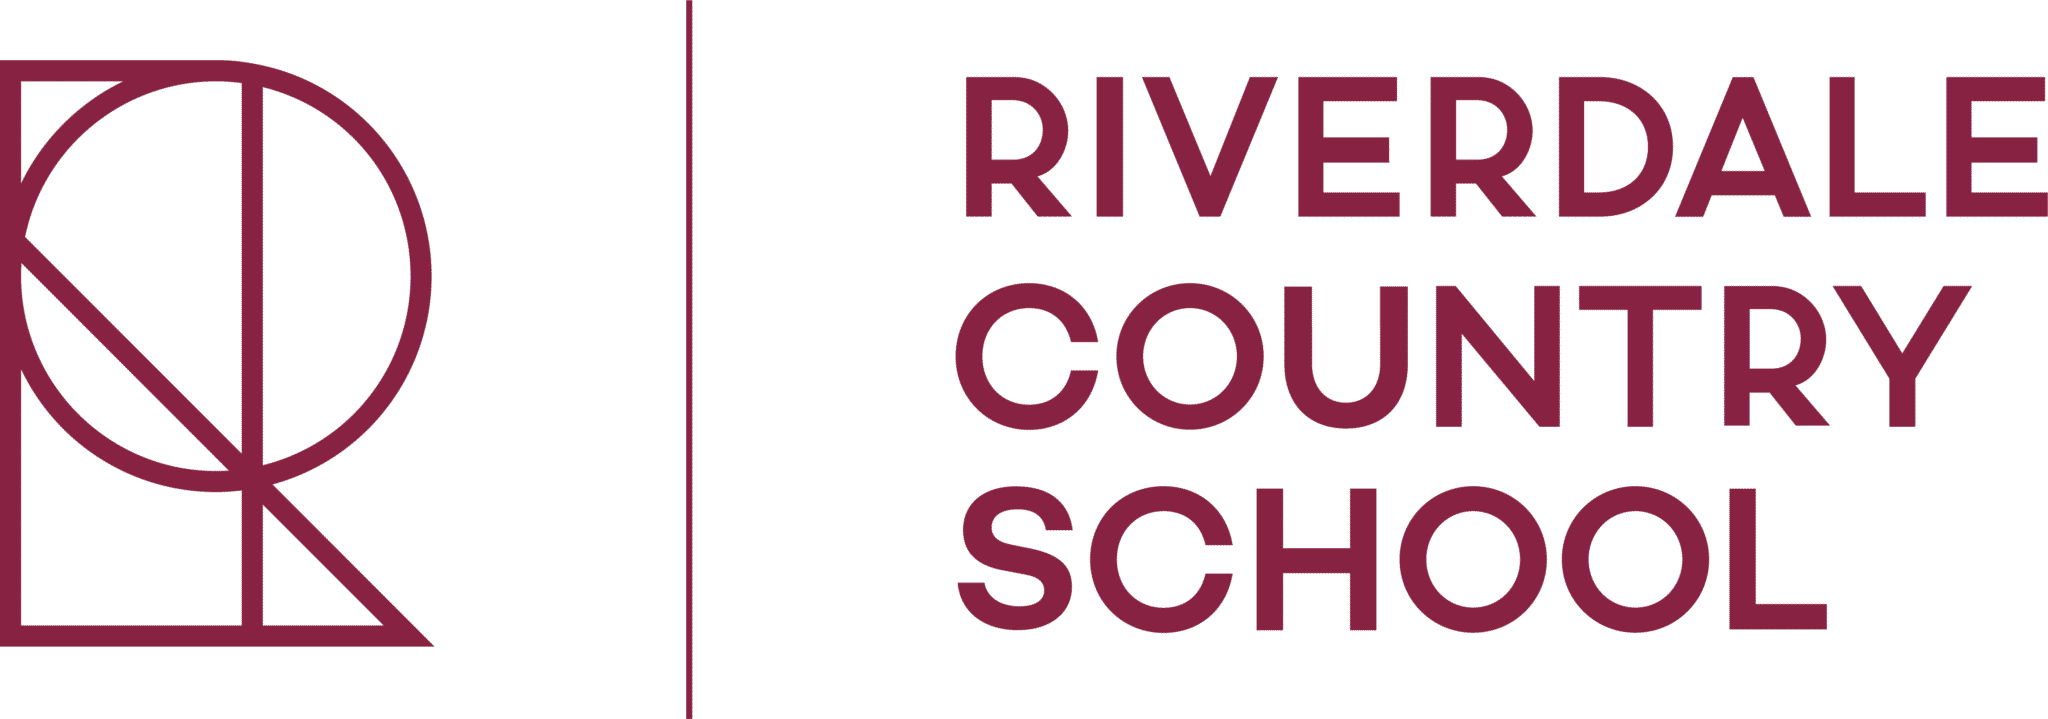 Riverdale County School